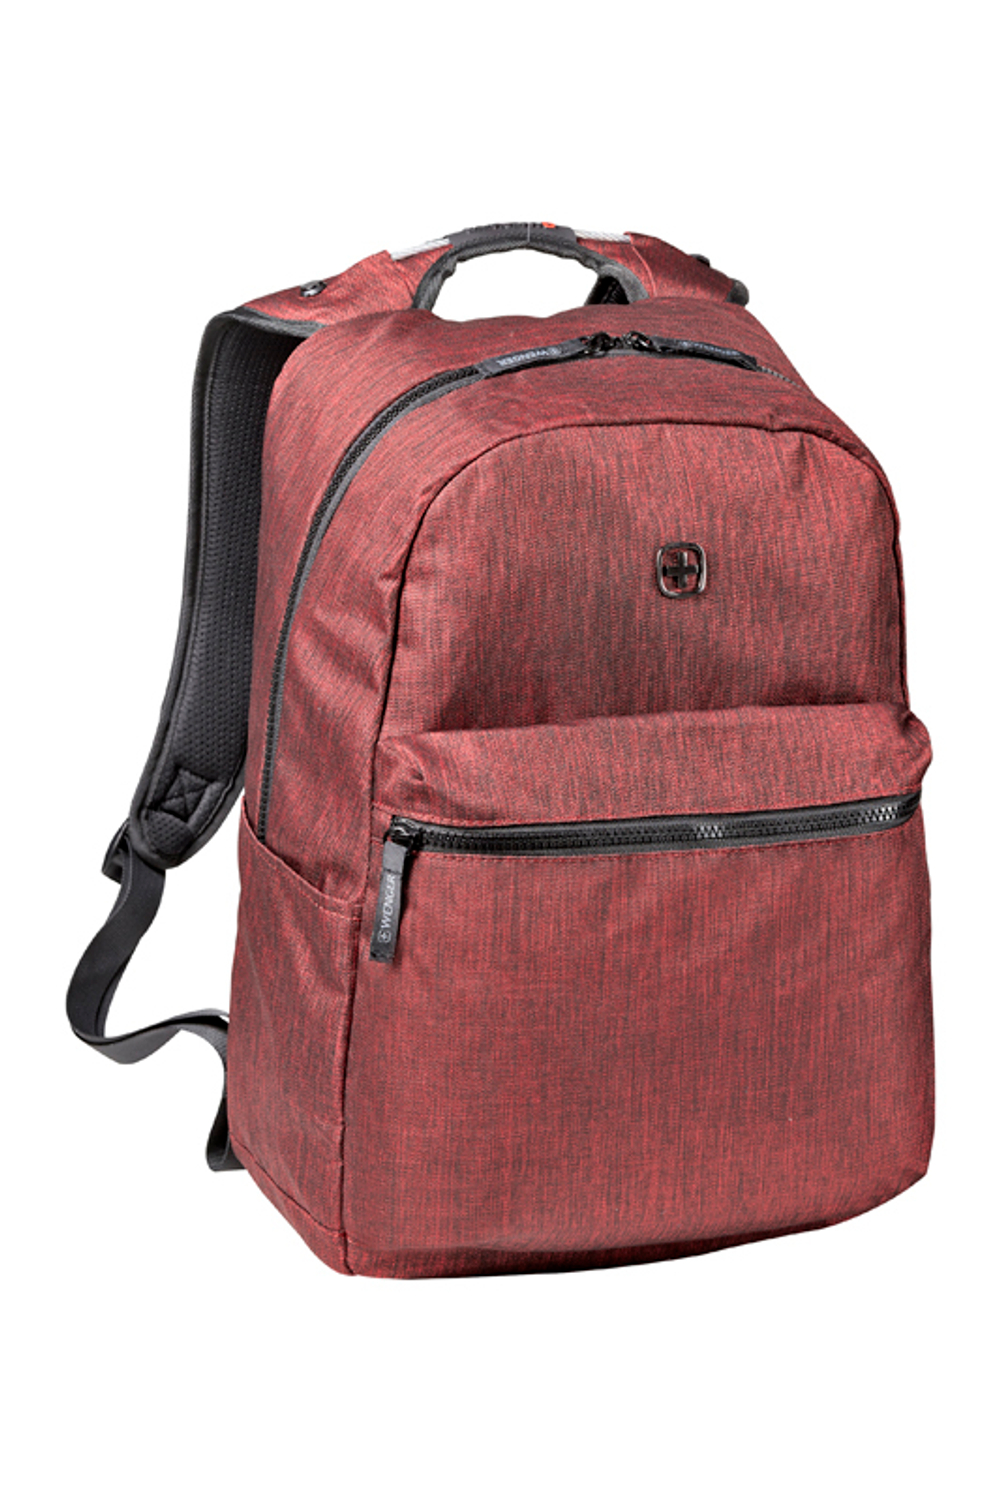 Стильный удобный городской рюкзак бордовый объёмом 22 л с эргономичной рельефной спинкой Colleague WENGER 605027